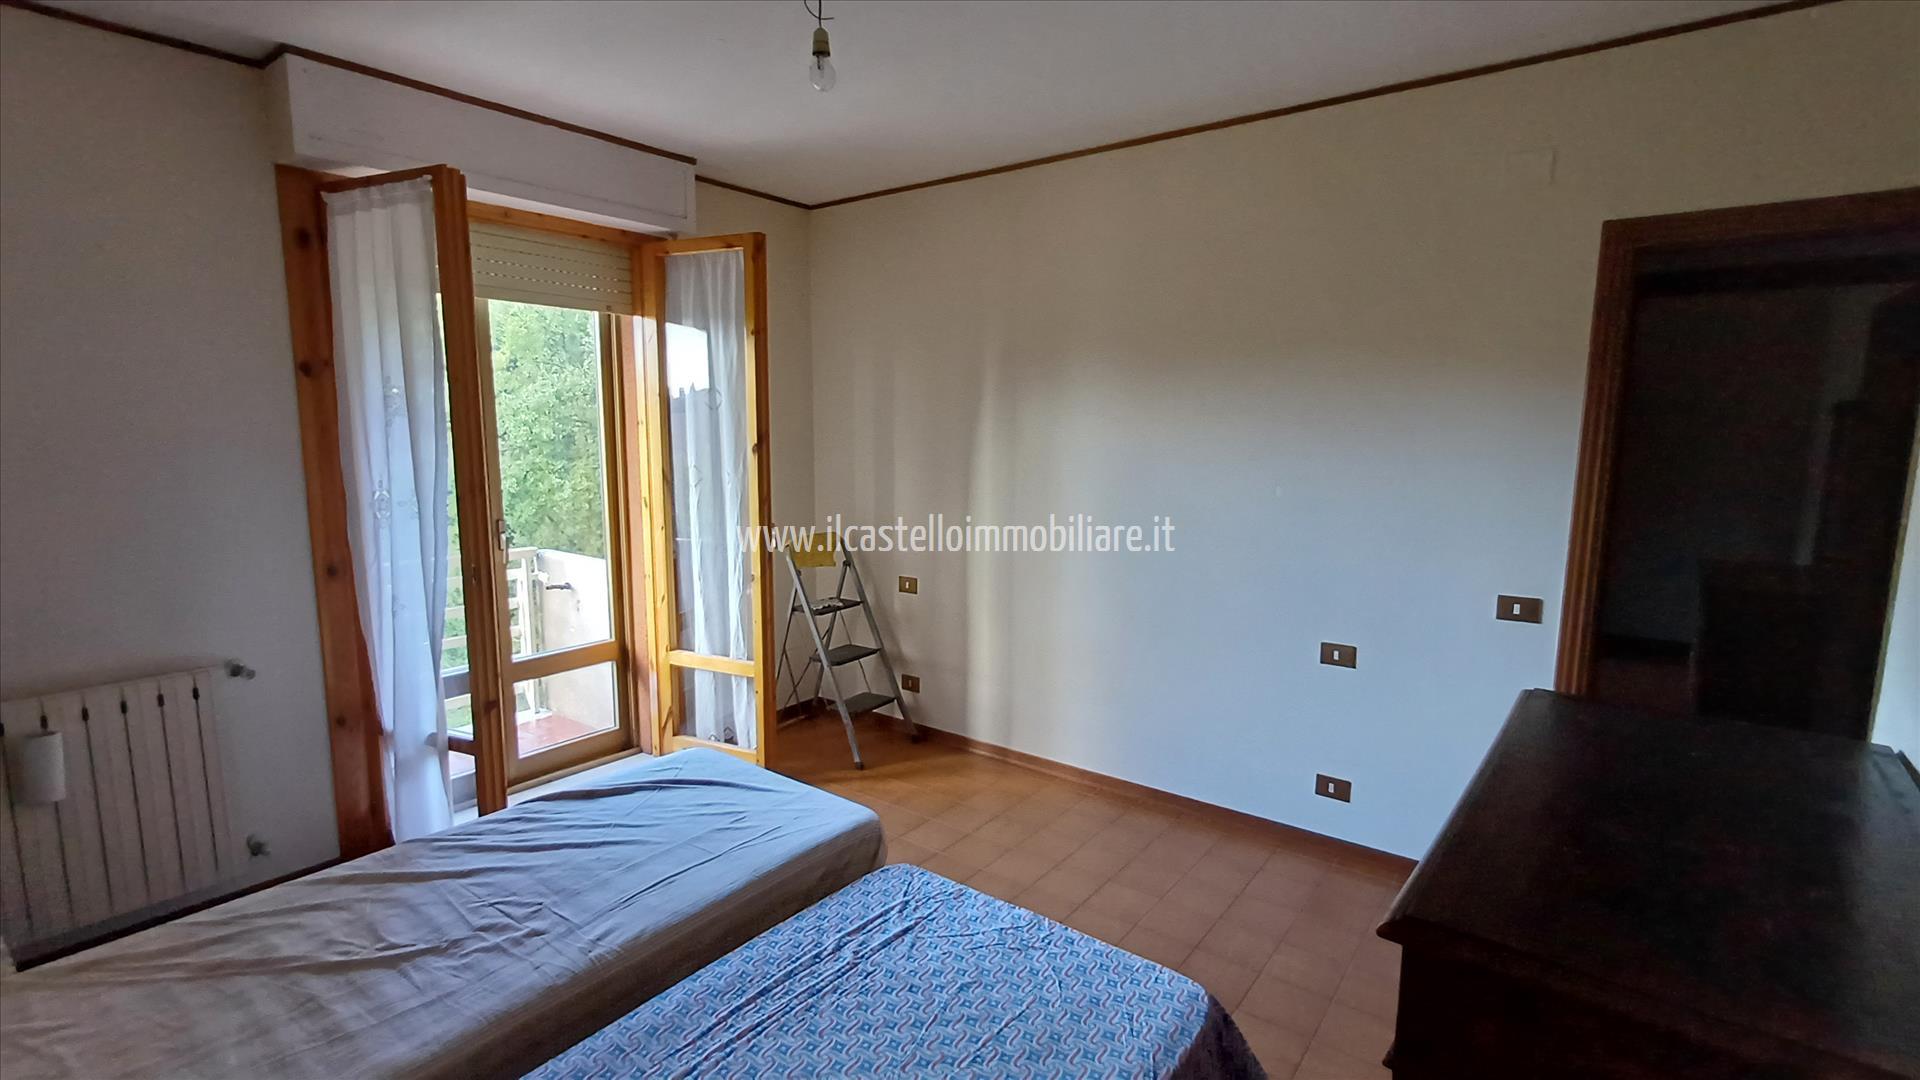 Appartamento in vendita a Chiusi, 2 locali, prezzo € 93.000 | PortaleAgenzieImmobiliari.it